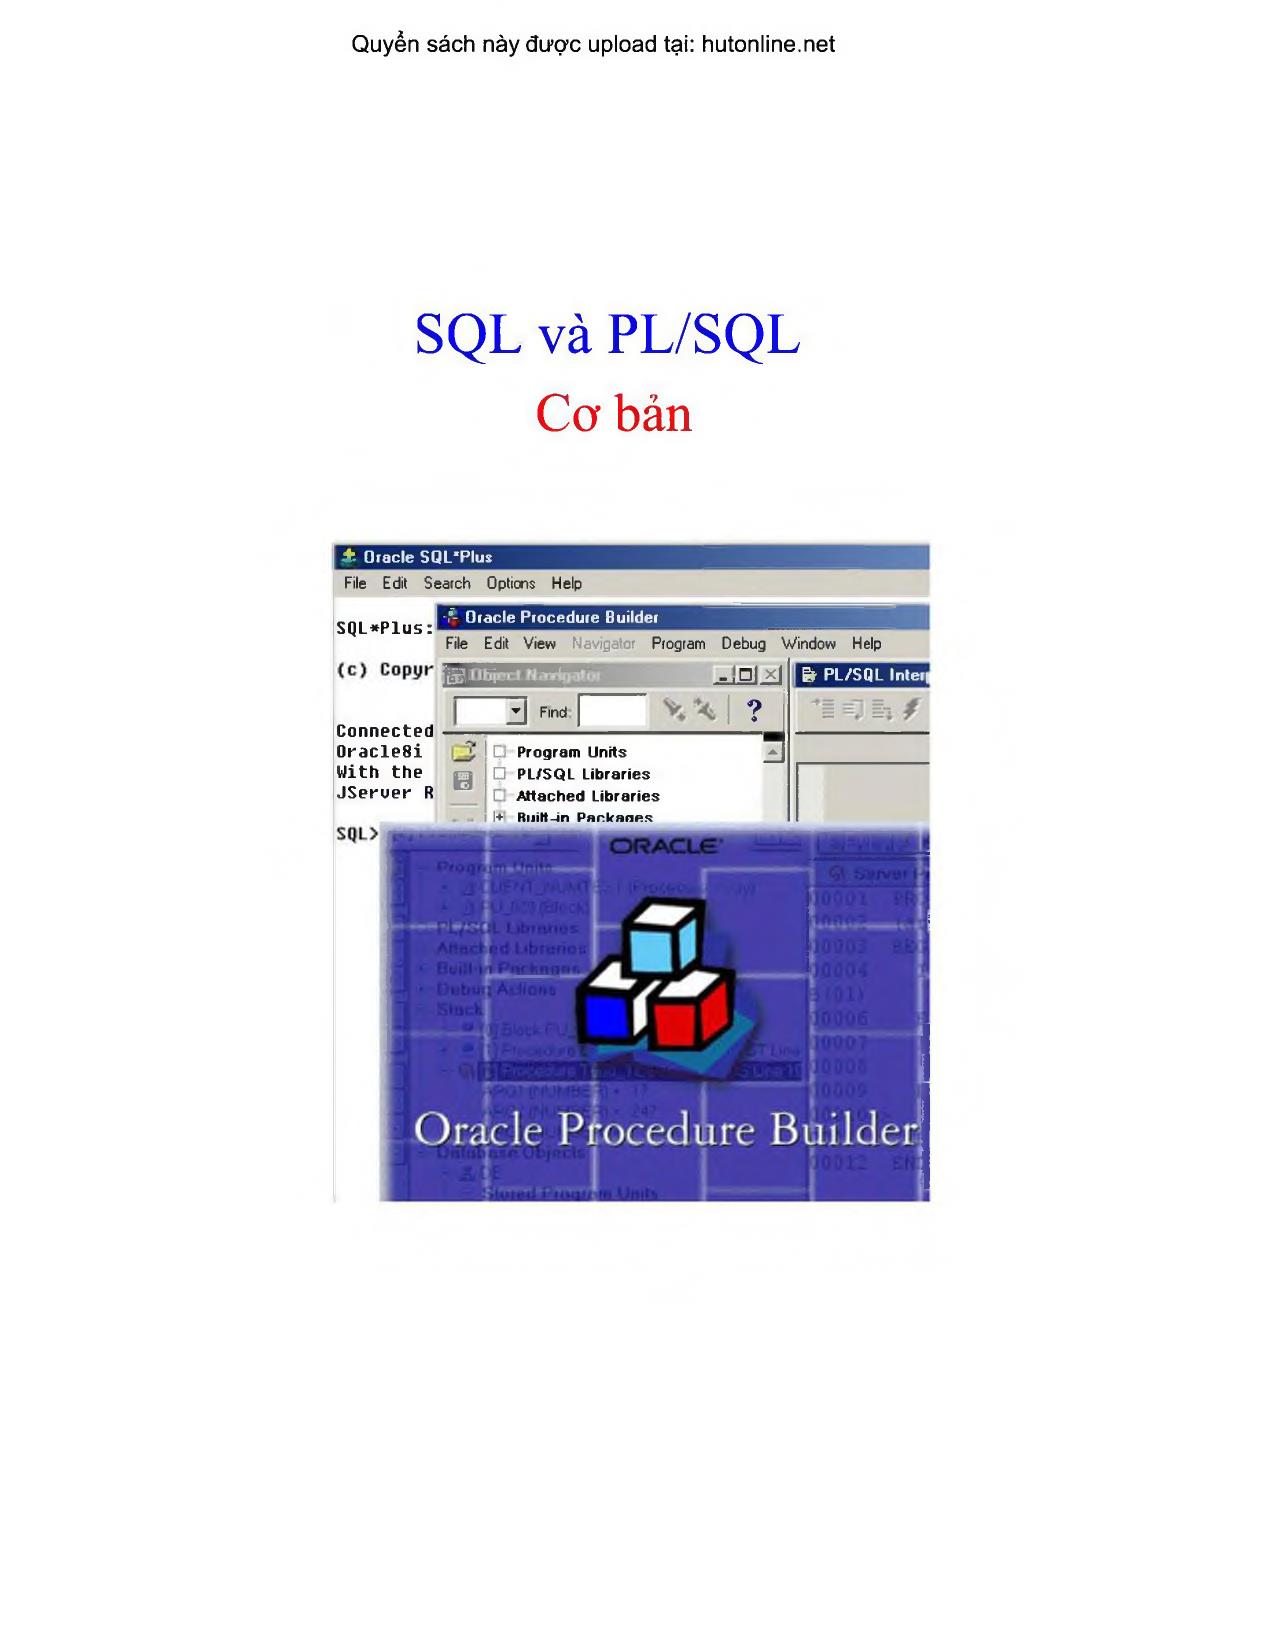 SQL và PL/SQL Cơ bản trang 2